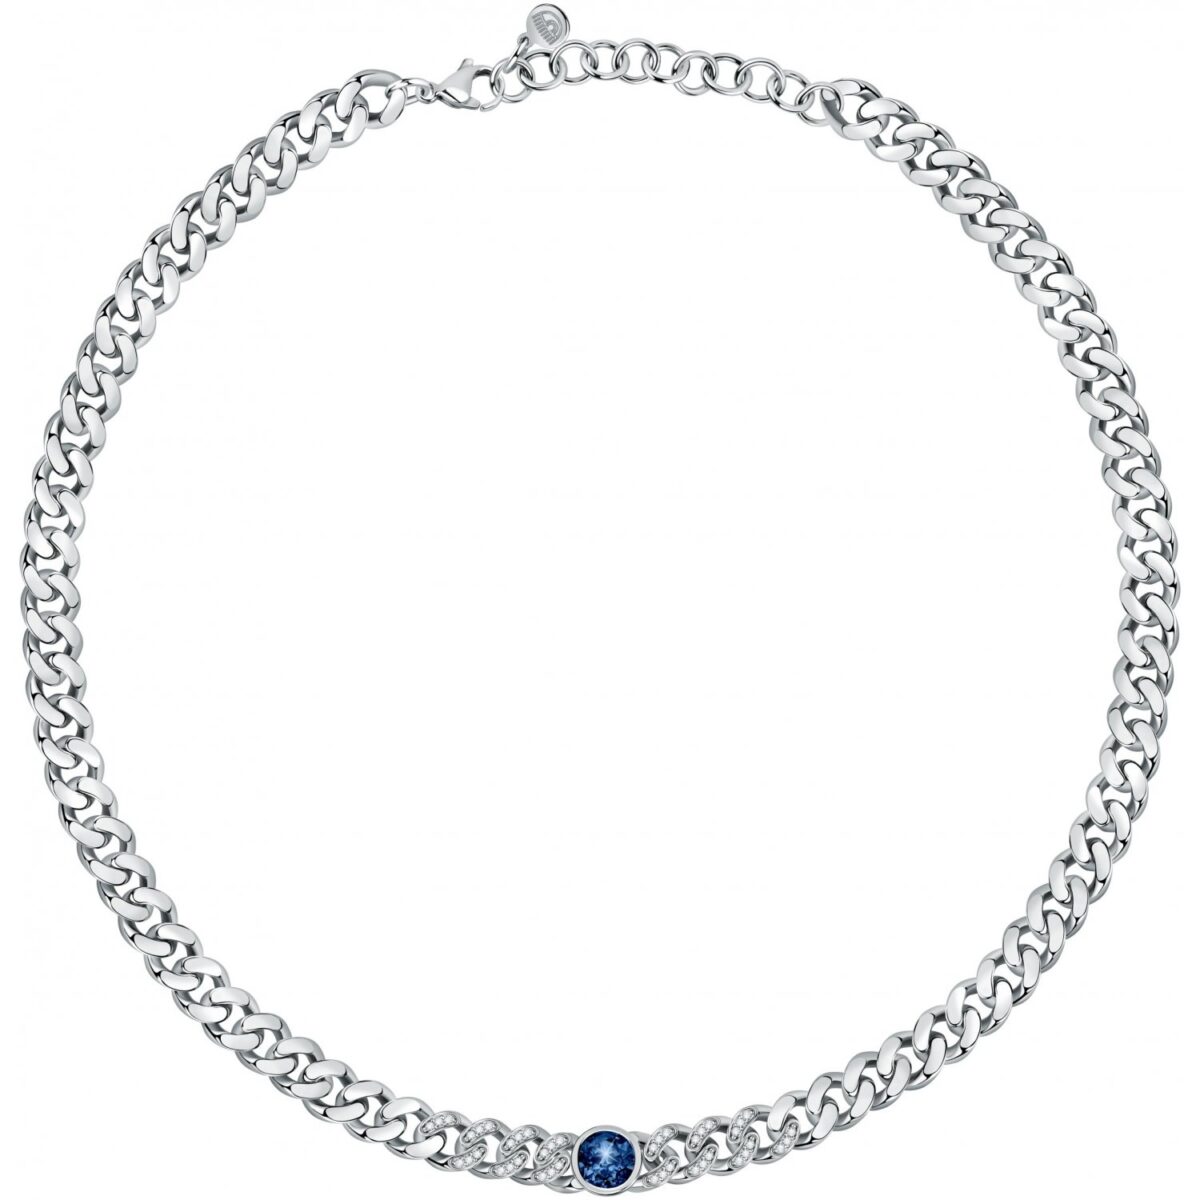 Collana Donna Chiara Ferragni Brand Chain Silver Puto Luce Blu